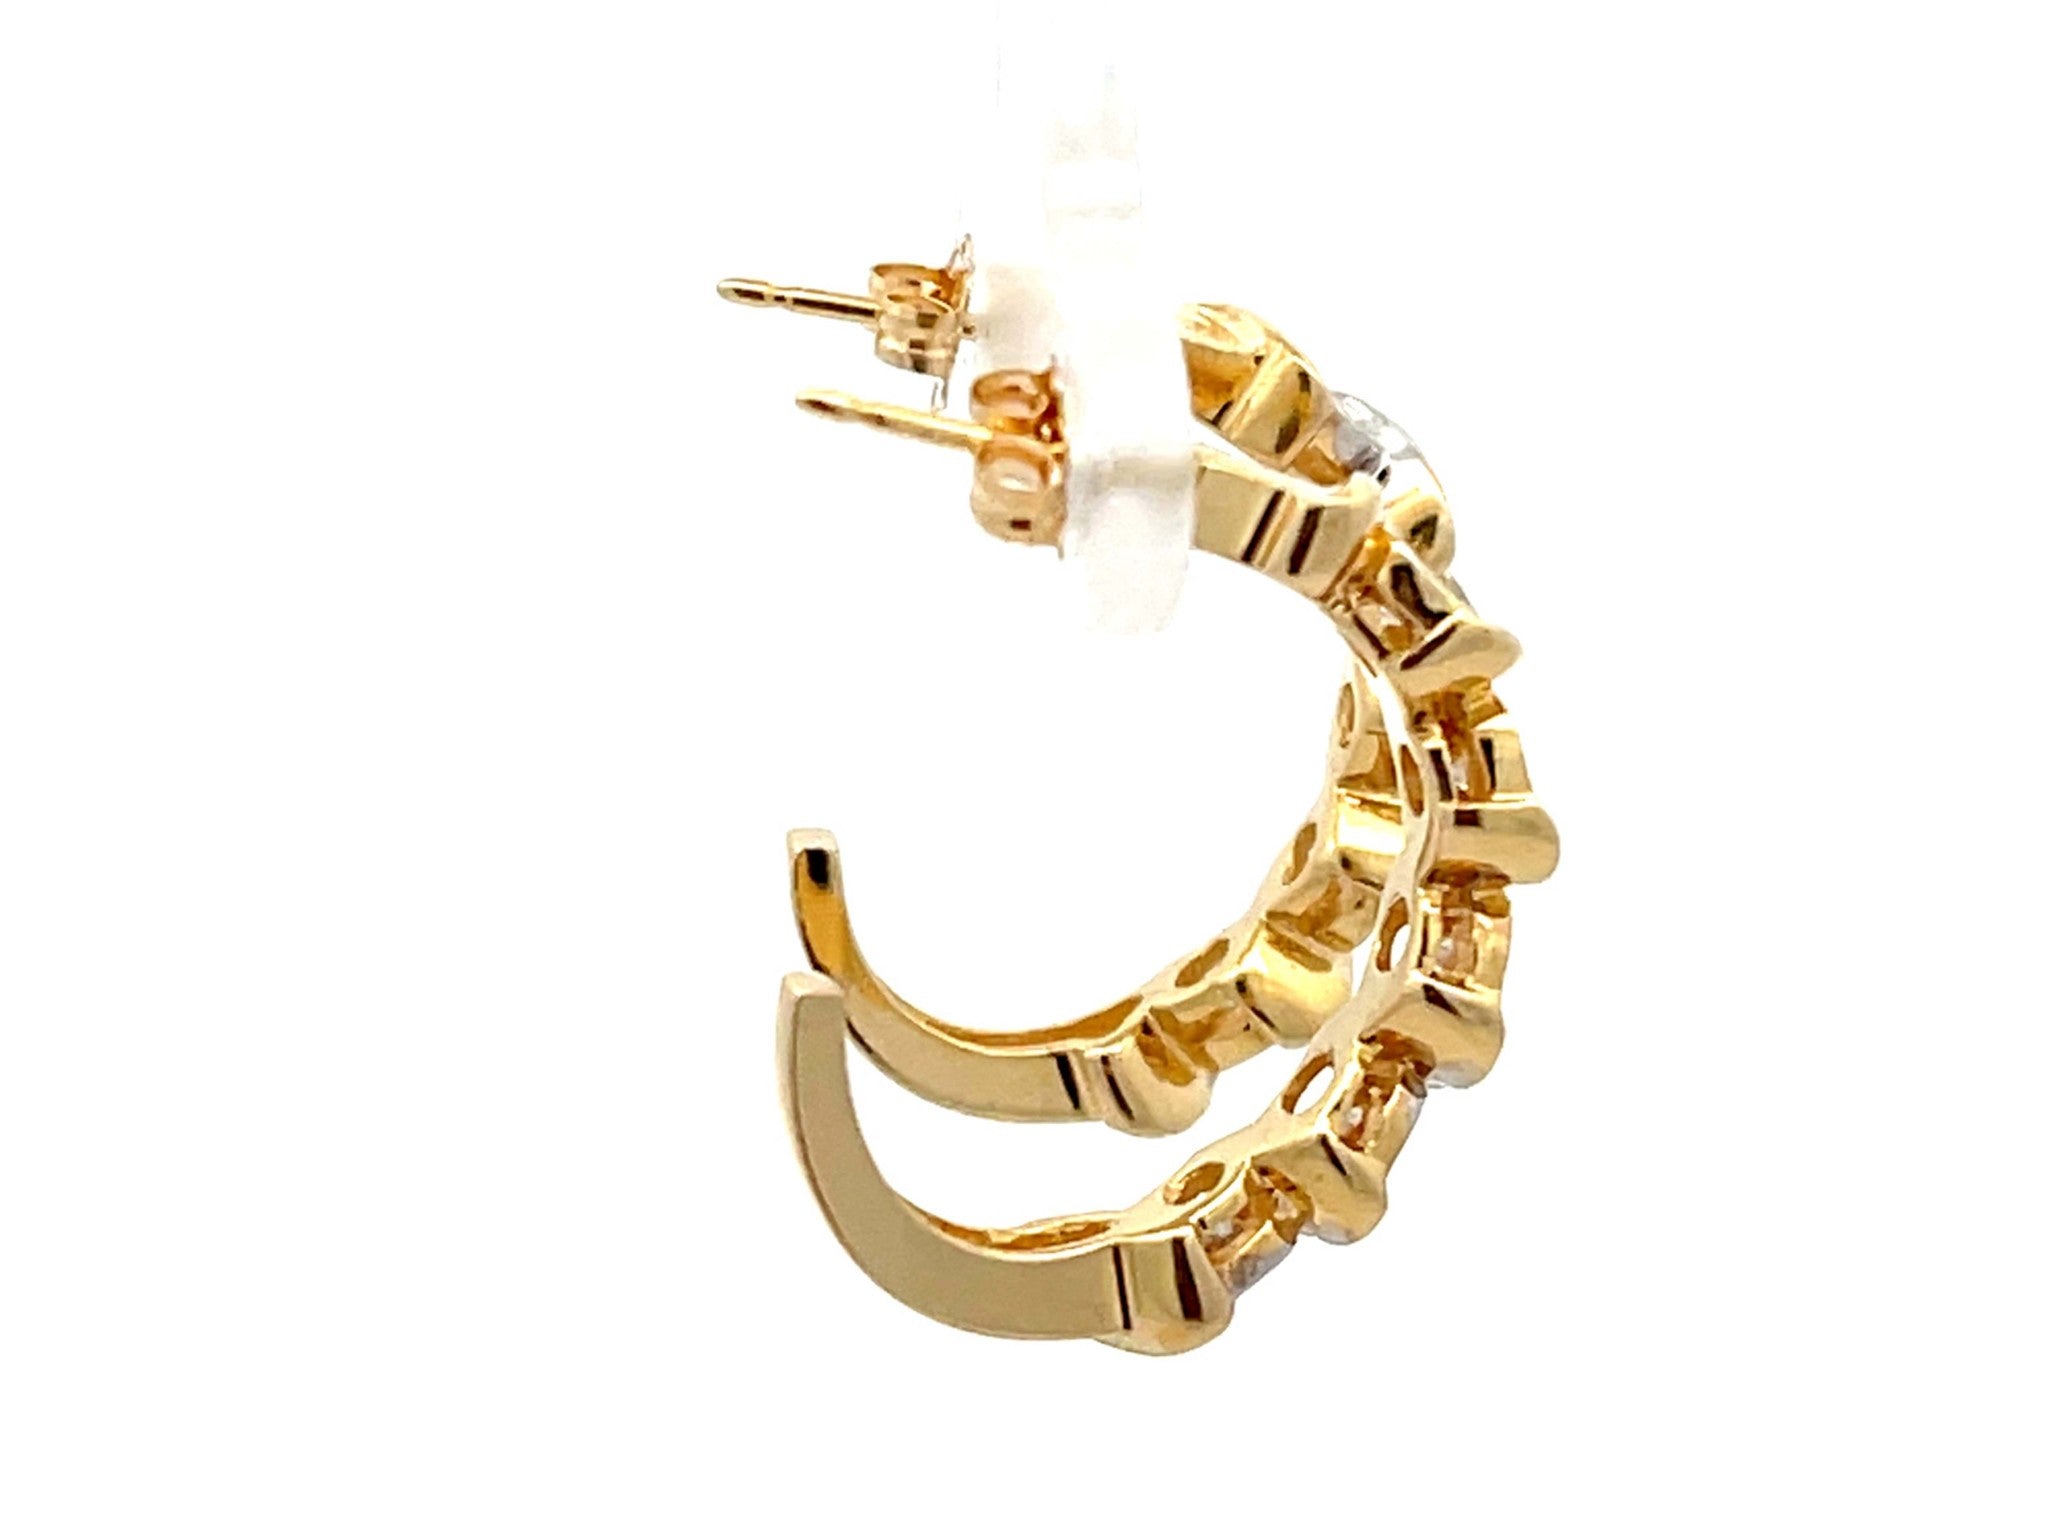 Diamond Wrap Earrings in 14k Yellow Gold